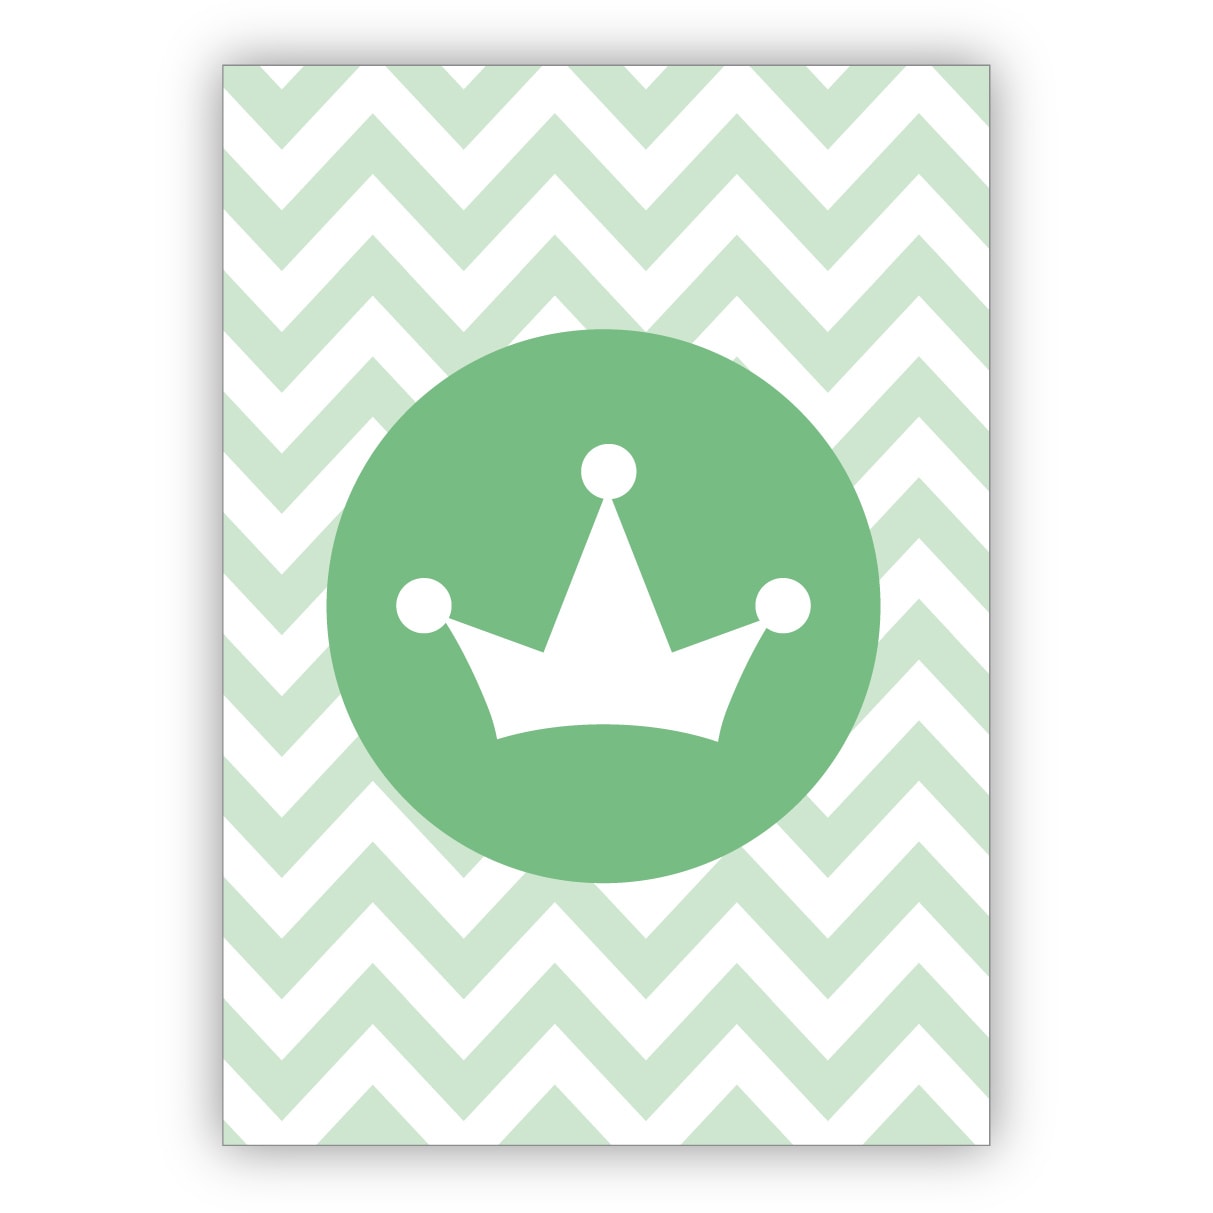 Schöne Glückwunschkarte mit Krone um Schützenkönige, Geburtstagskinder oder ihre Lieben in grün zu krönen